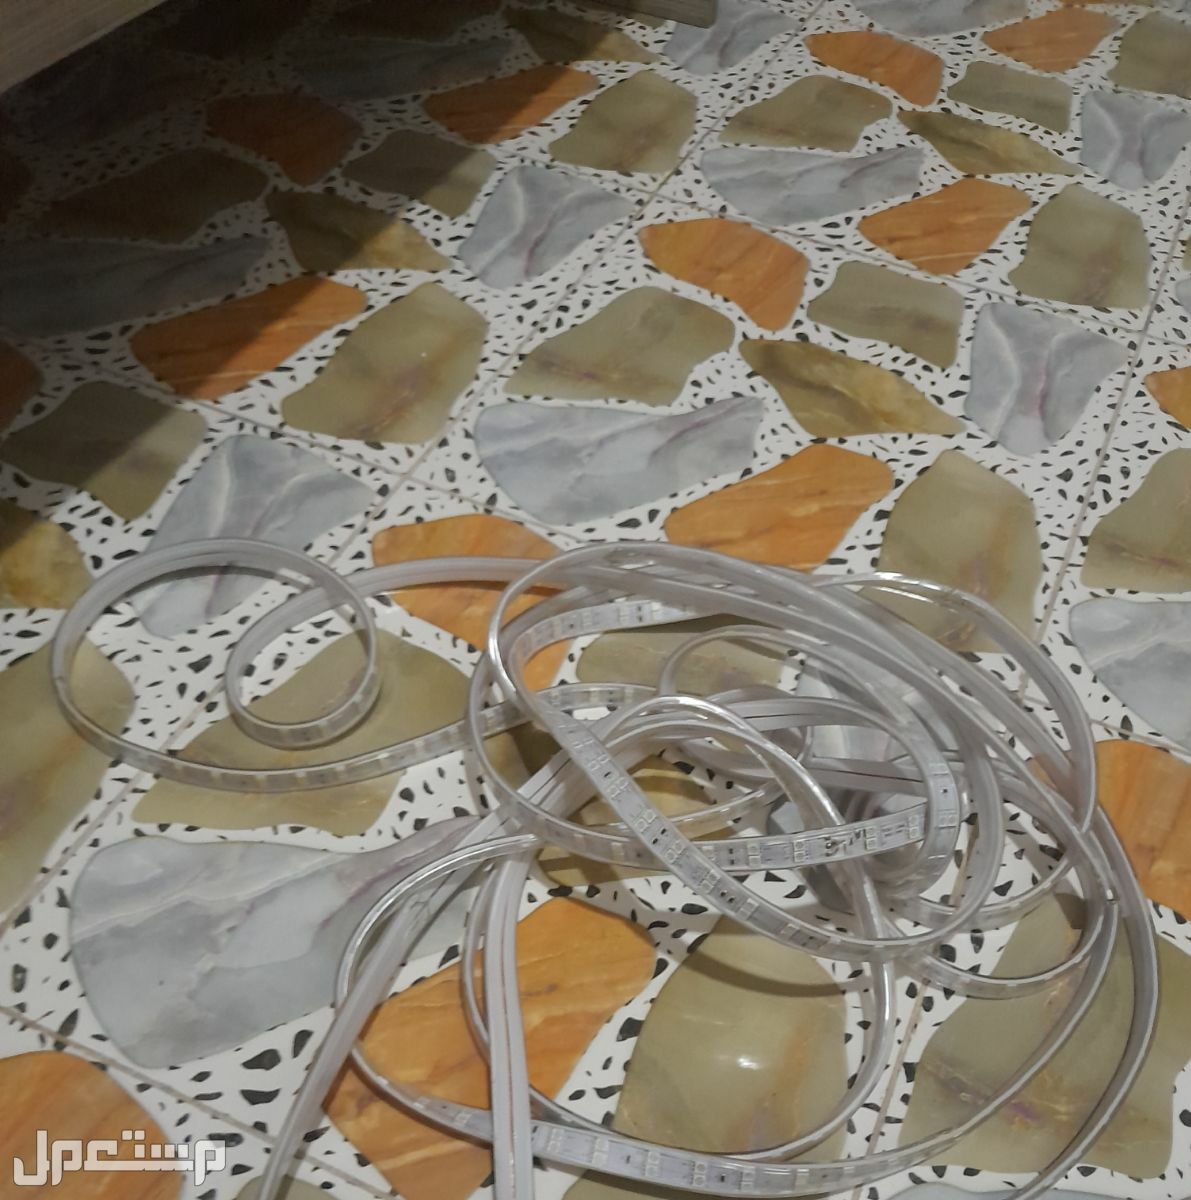 شريط ليد 8 متر LED مع الريموت للتواصال ماركة devo في كربلاء‎ بسعر 35 ألف دينار عراقي